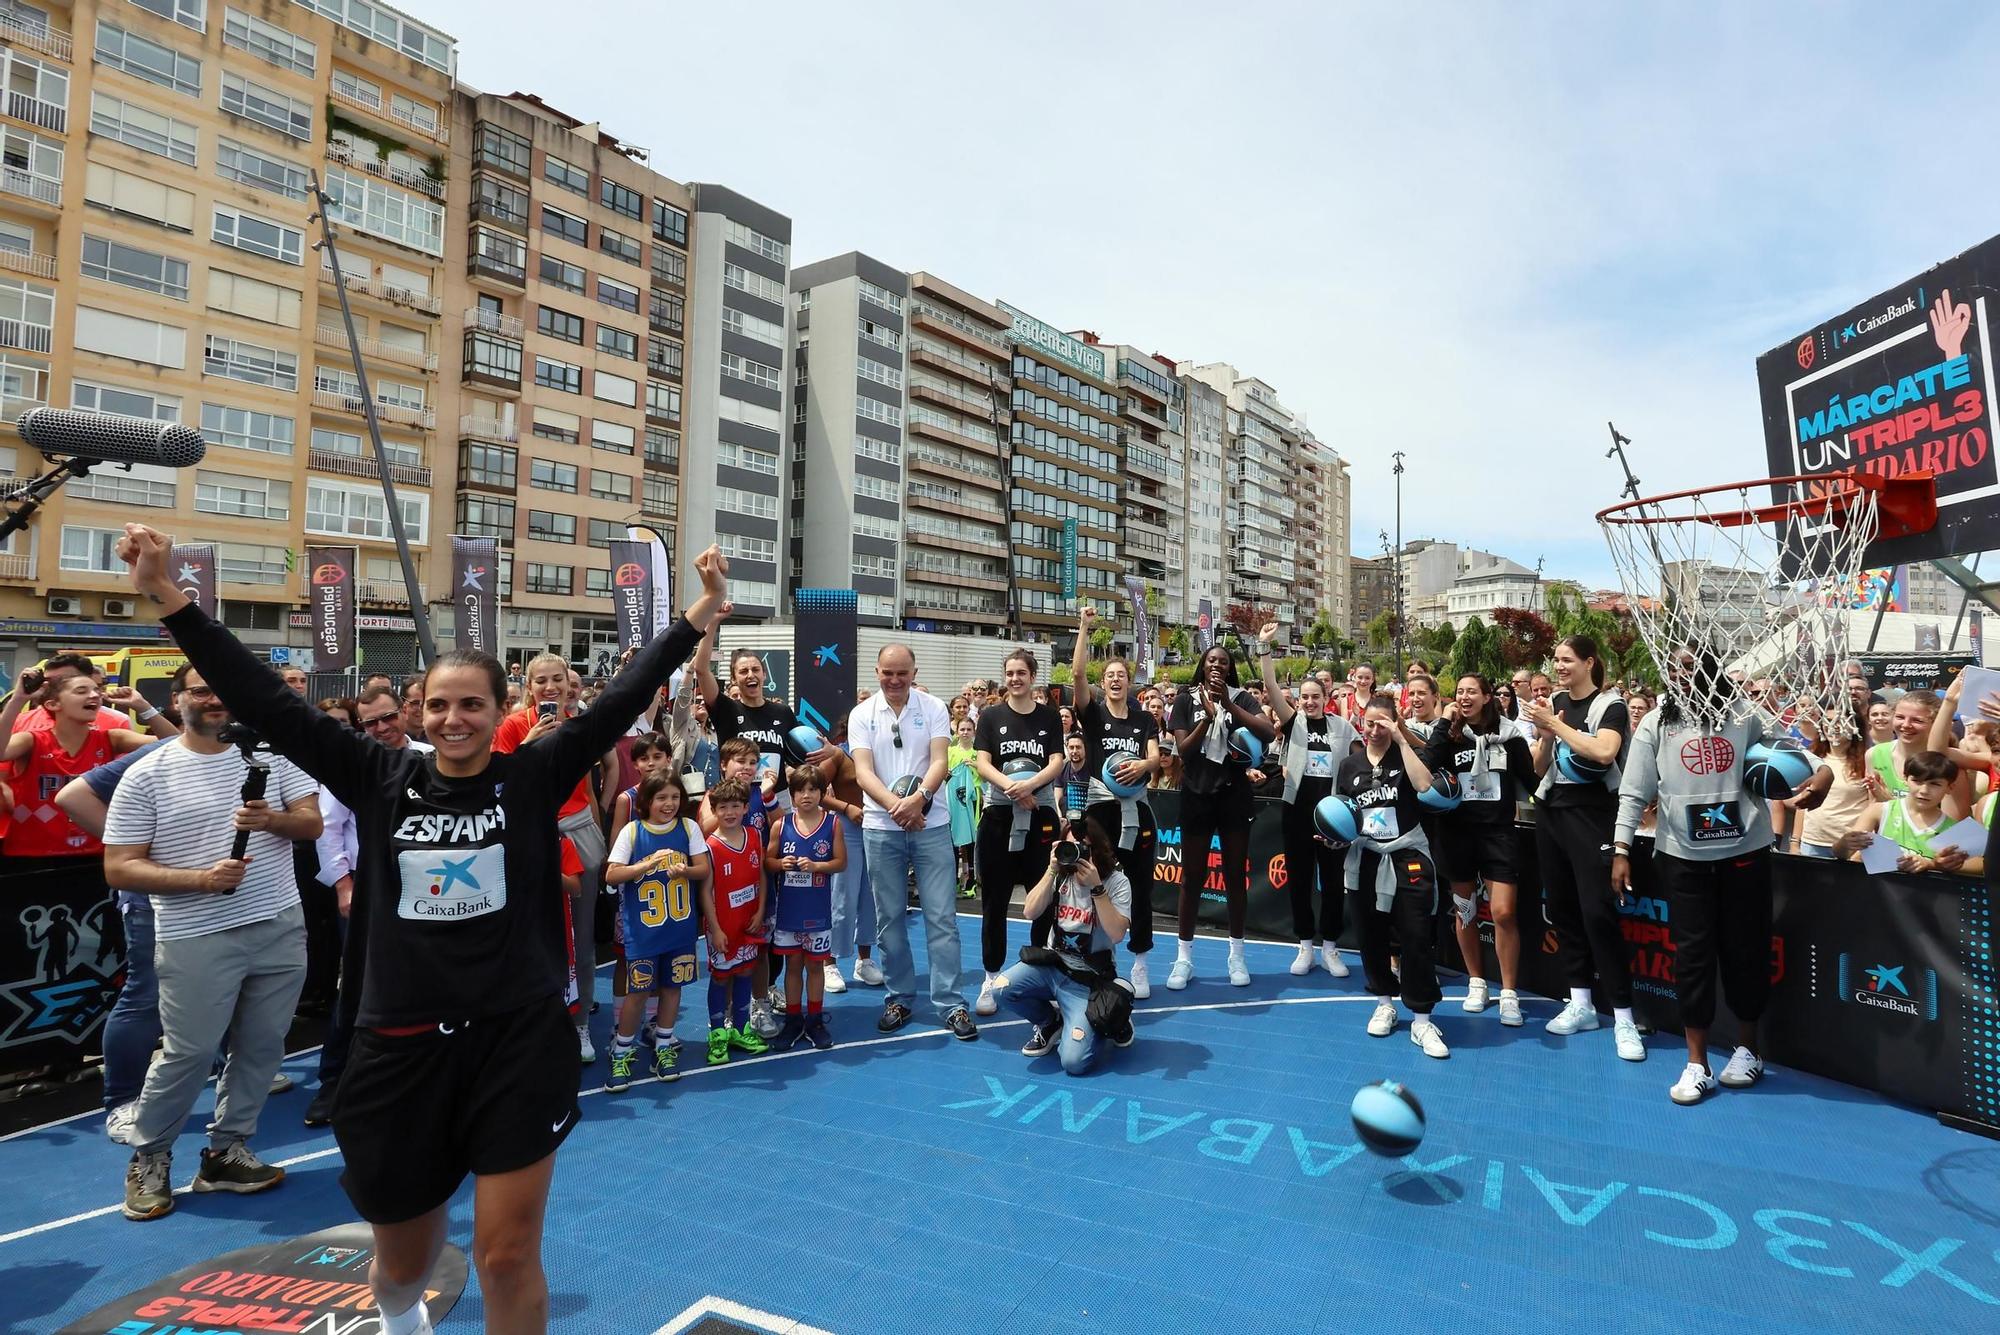 La Selección española de Baloncesto femenino asistió al Torneo 3x3 disputado en la plaza exterior de Vialia